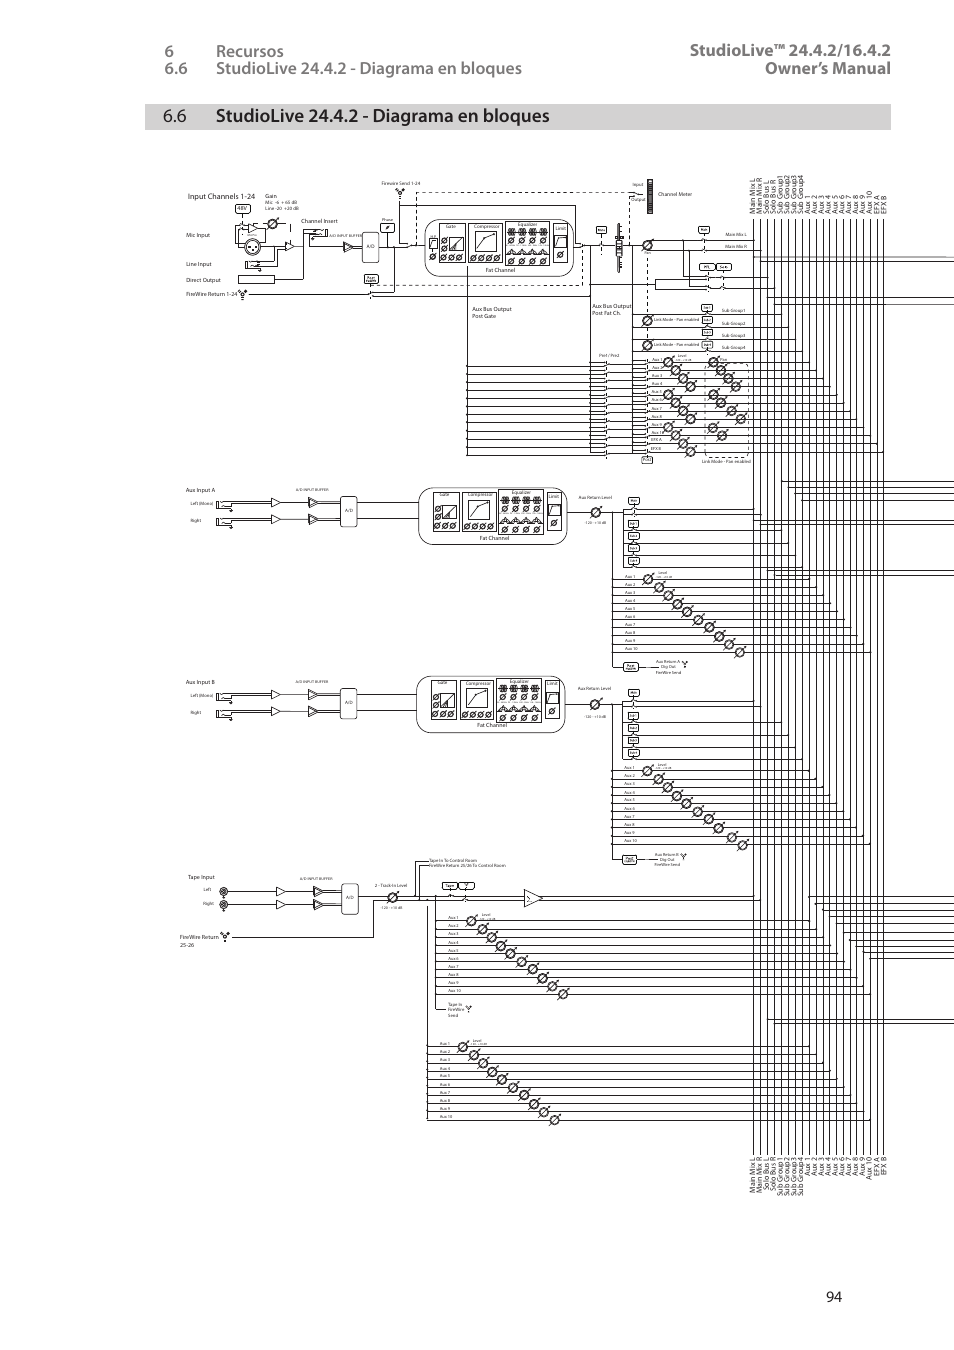 6 studiolive 24.4.2 - diagrama en bloques, 6 studiolive 24.4.2 - diagrama en, Bloques — 94 | Vsl aux inputs router, Geq inputs router | PreSonus StudioLive 24.4.2 Manual del usuario | Página 98 / 114